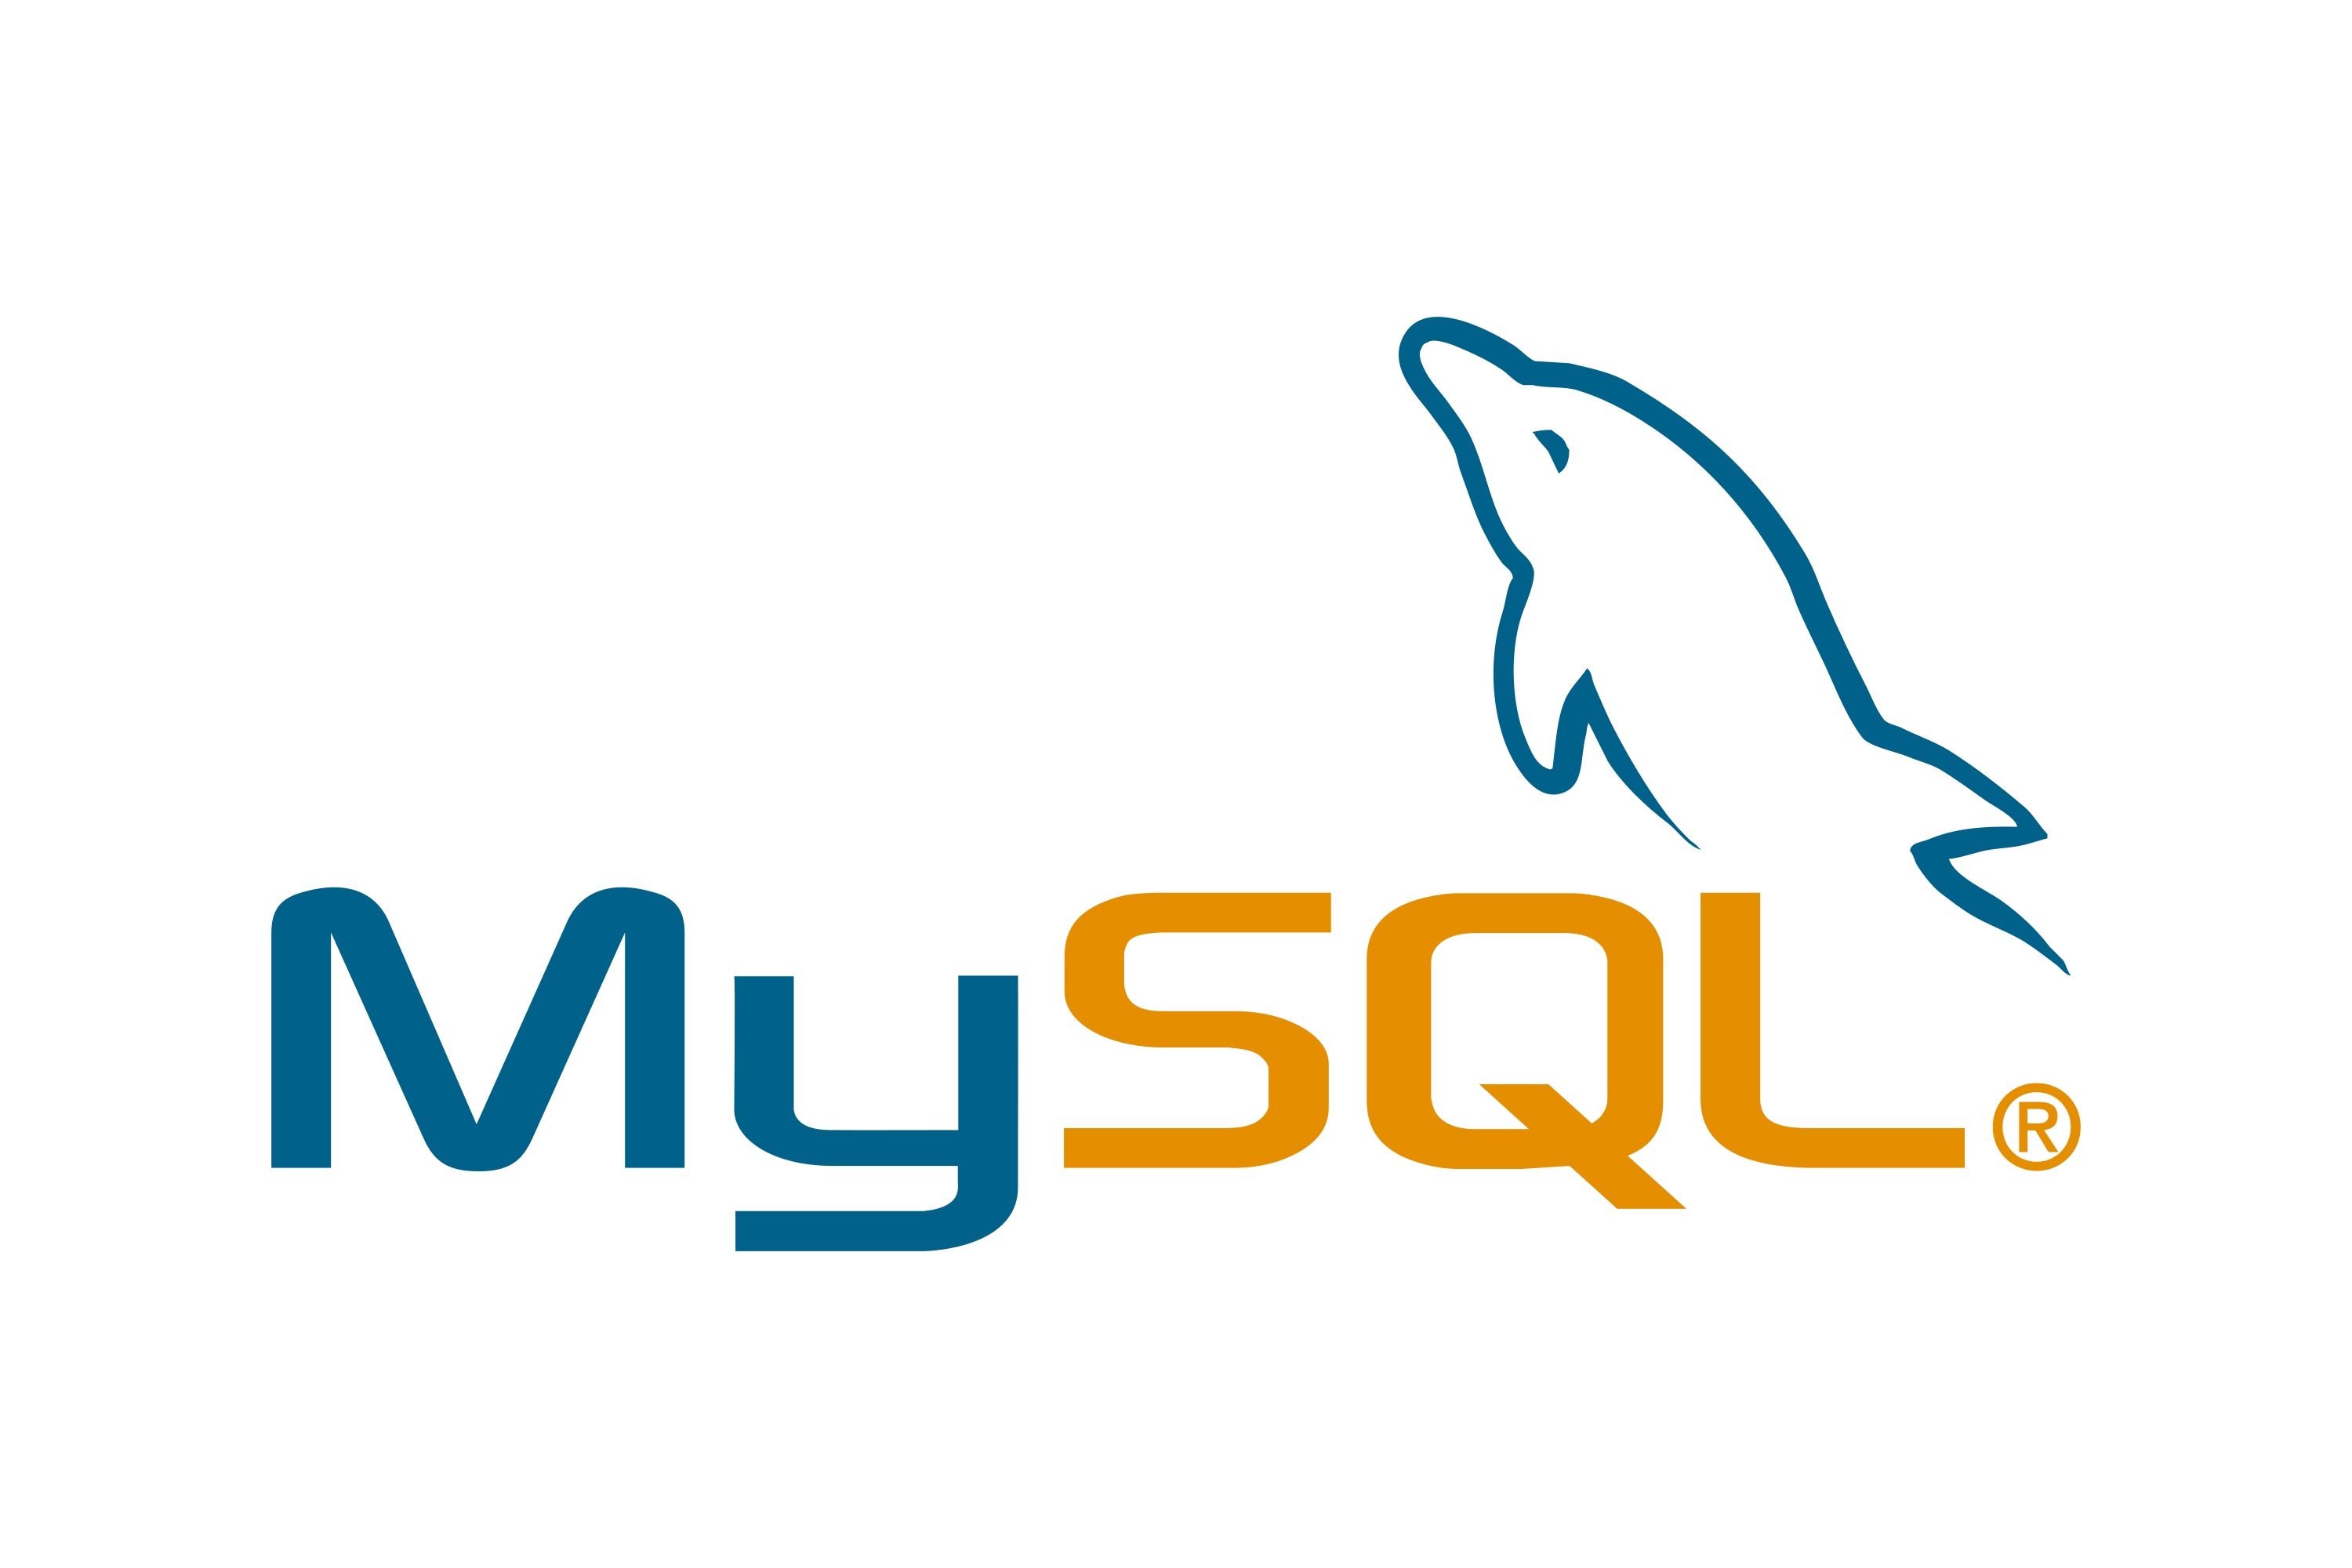 mysql logo图片